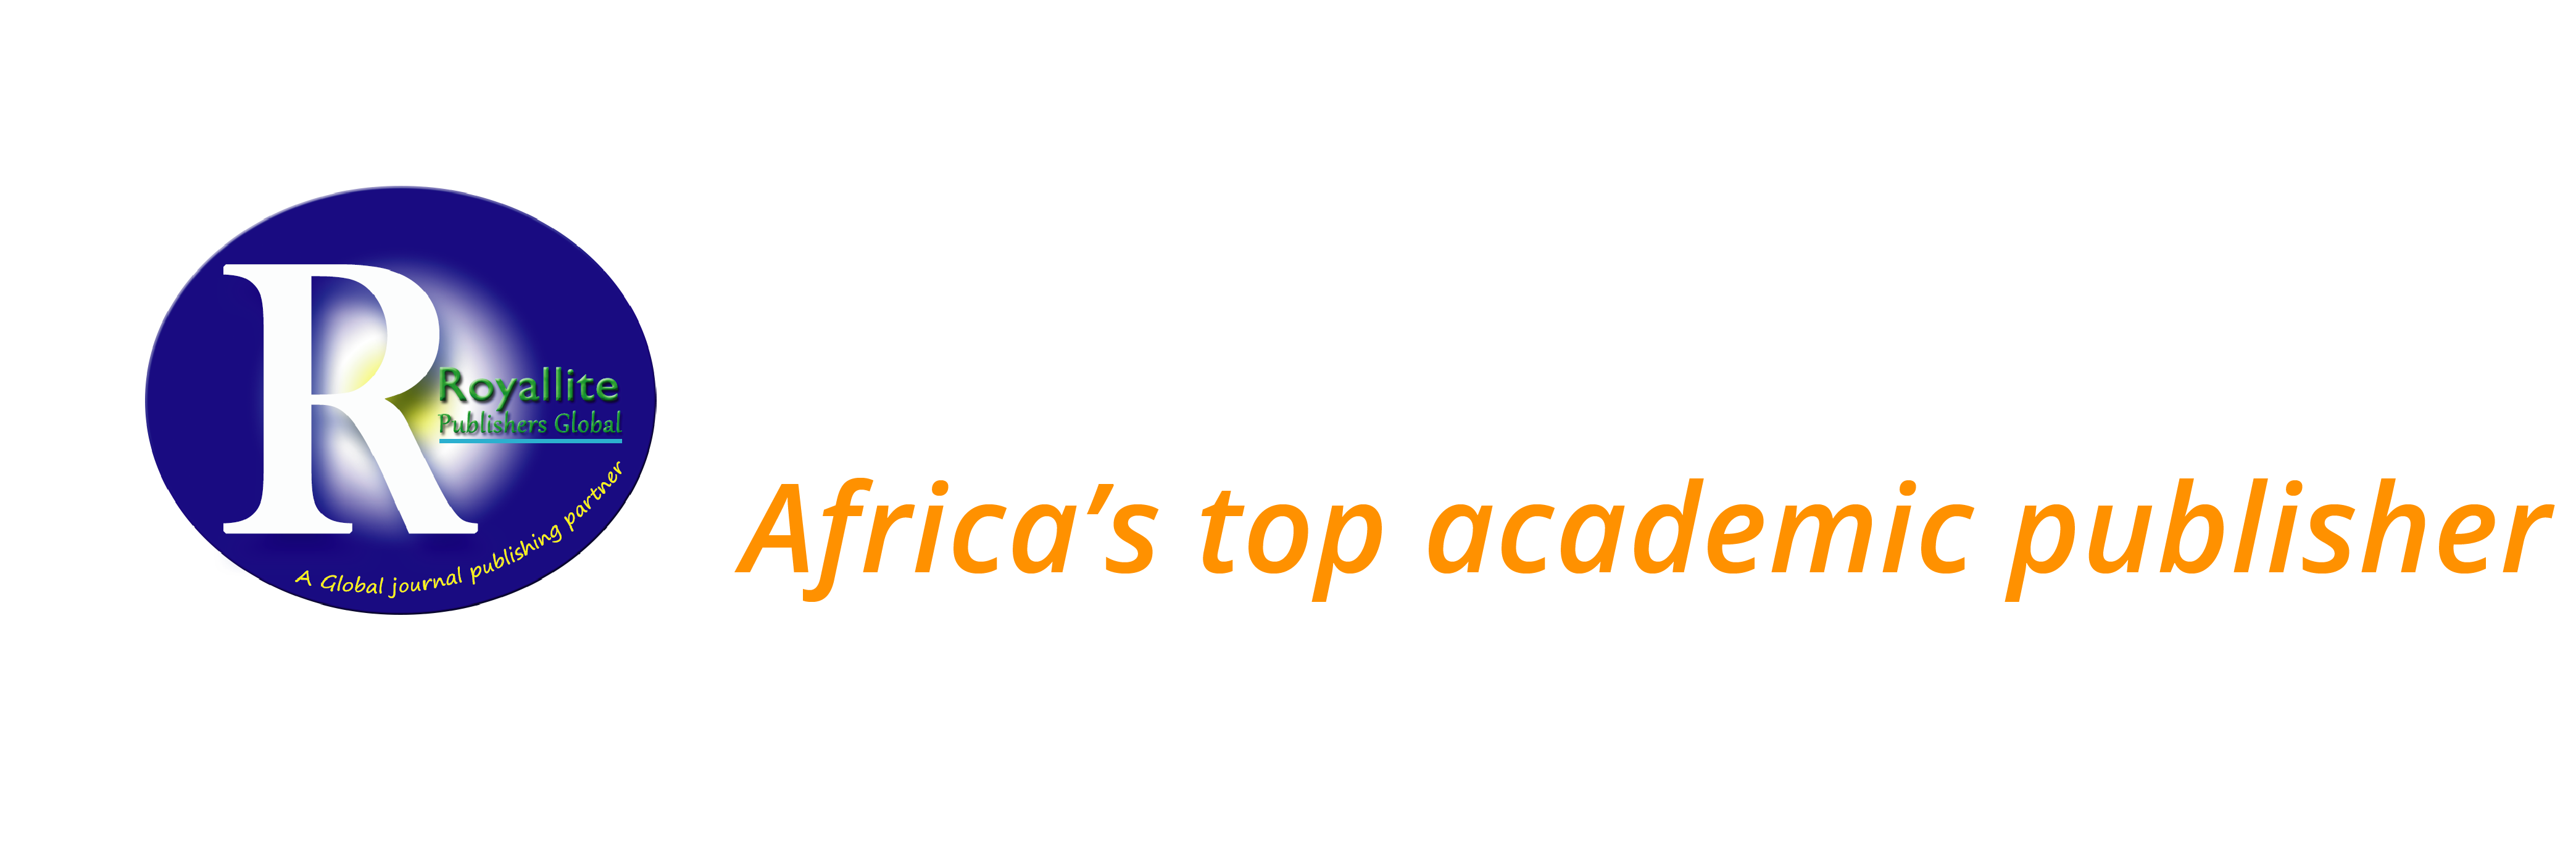 Royallite Global